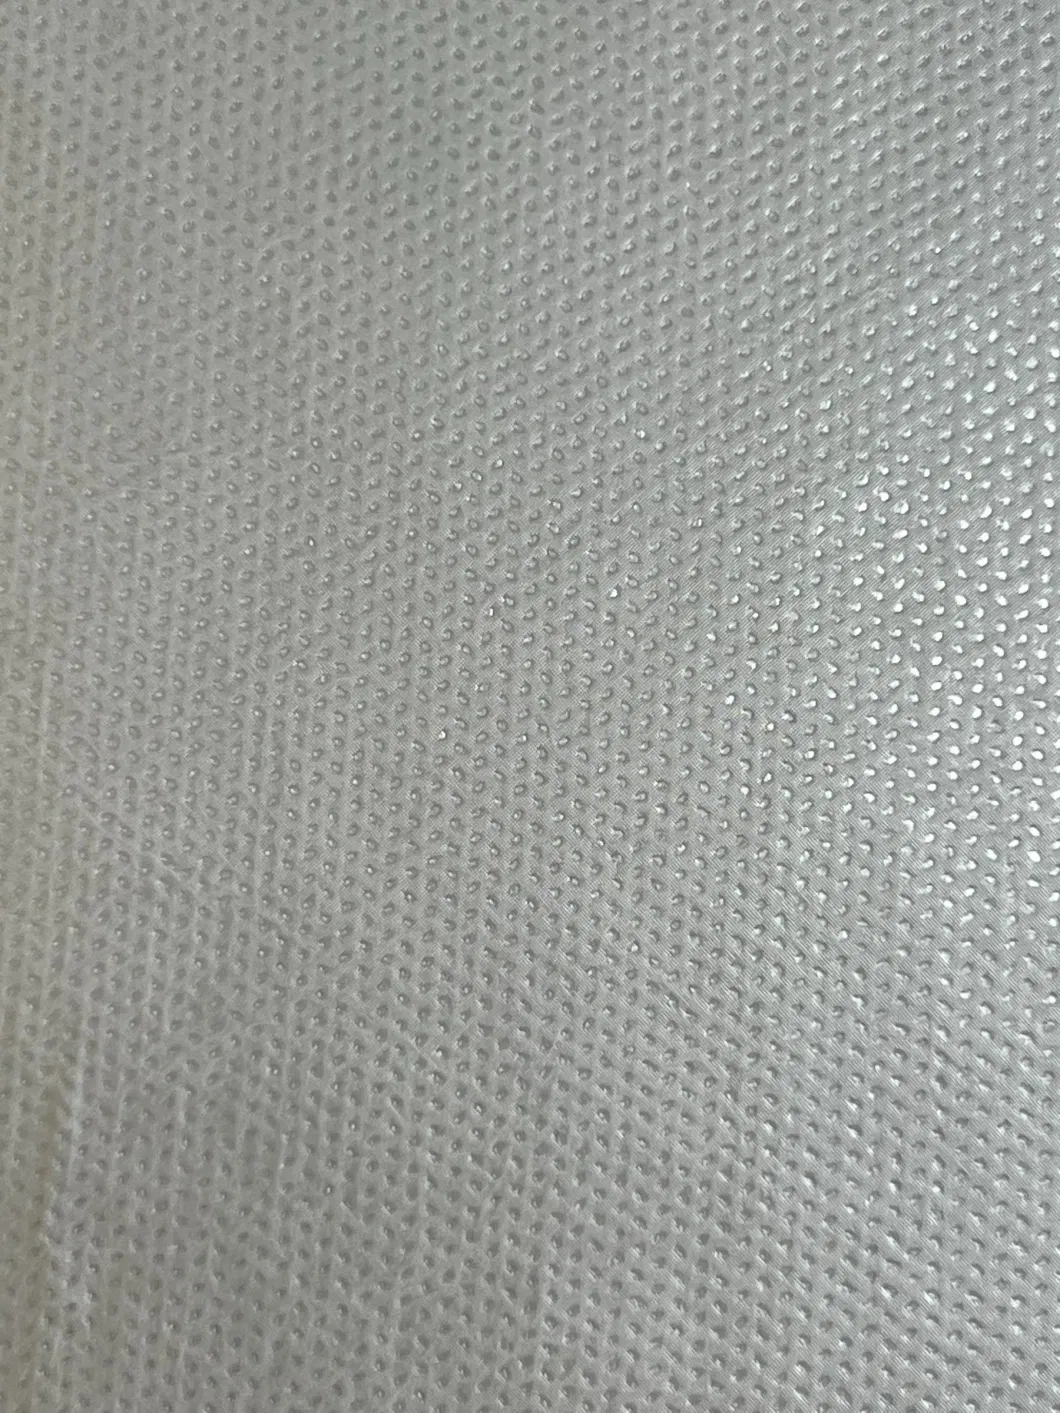 Protective Coveral PE Lamination Nonwoven Fabric